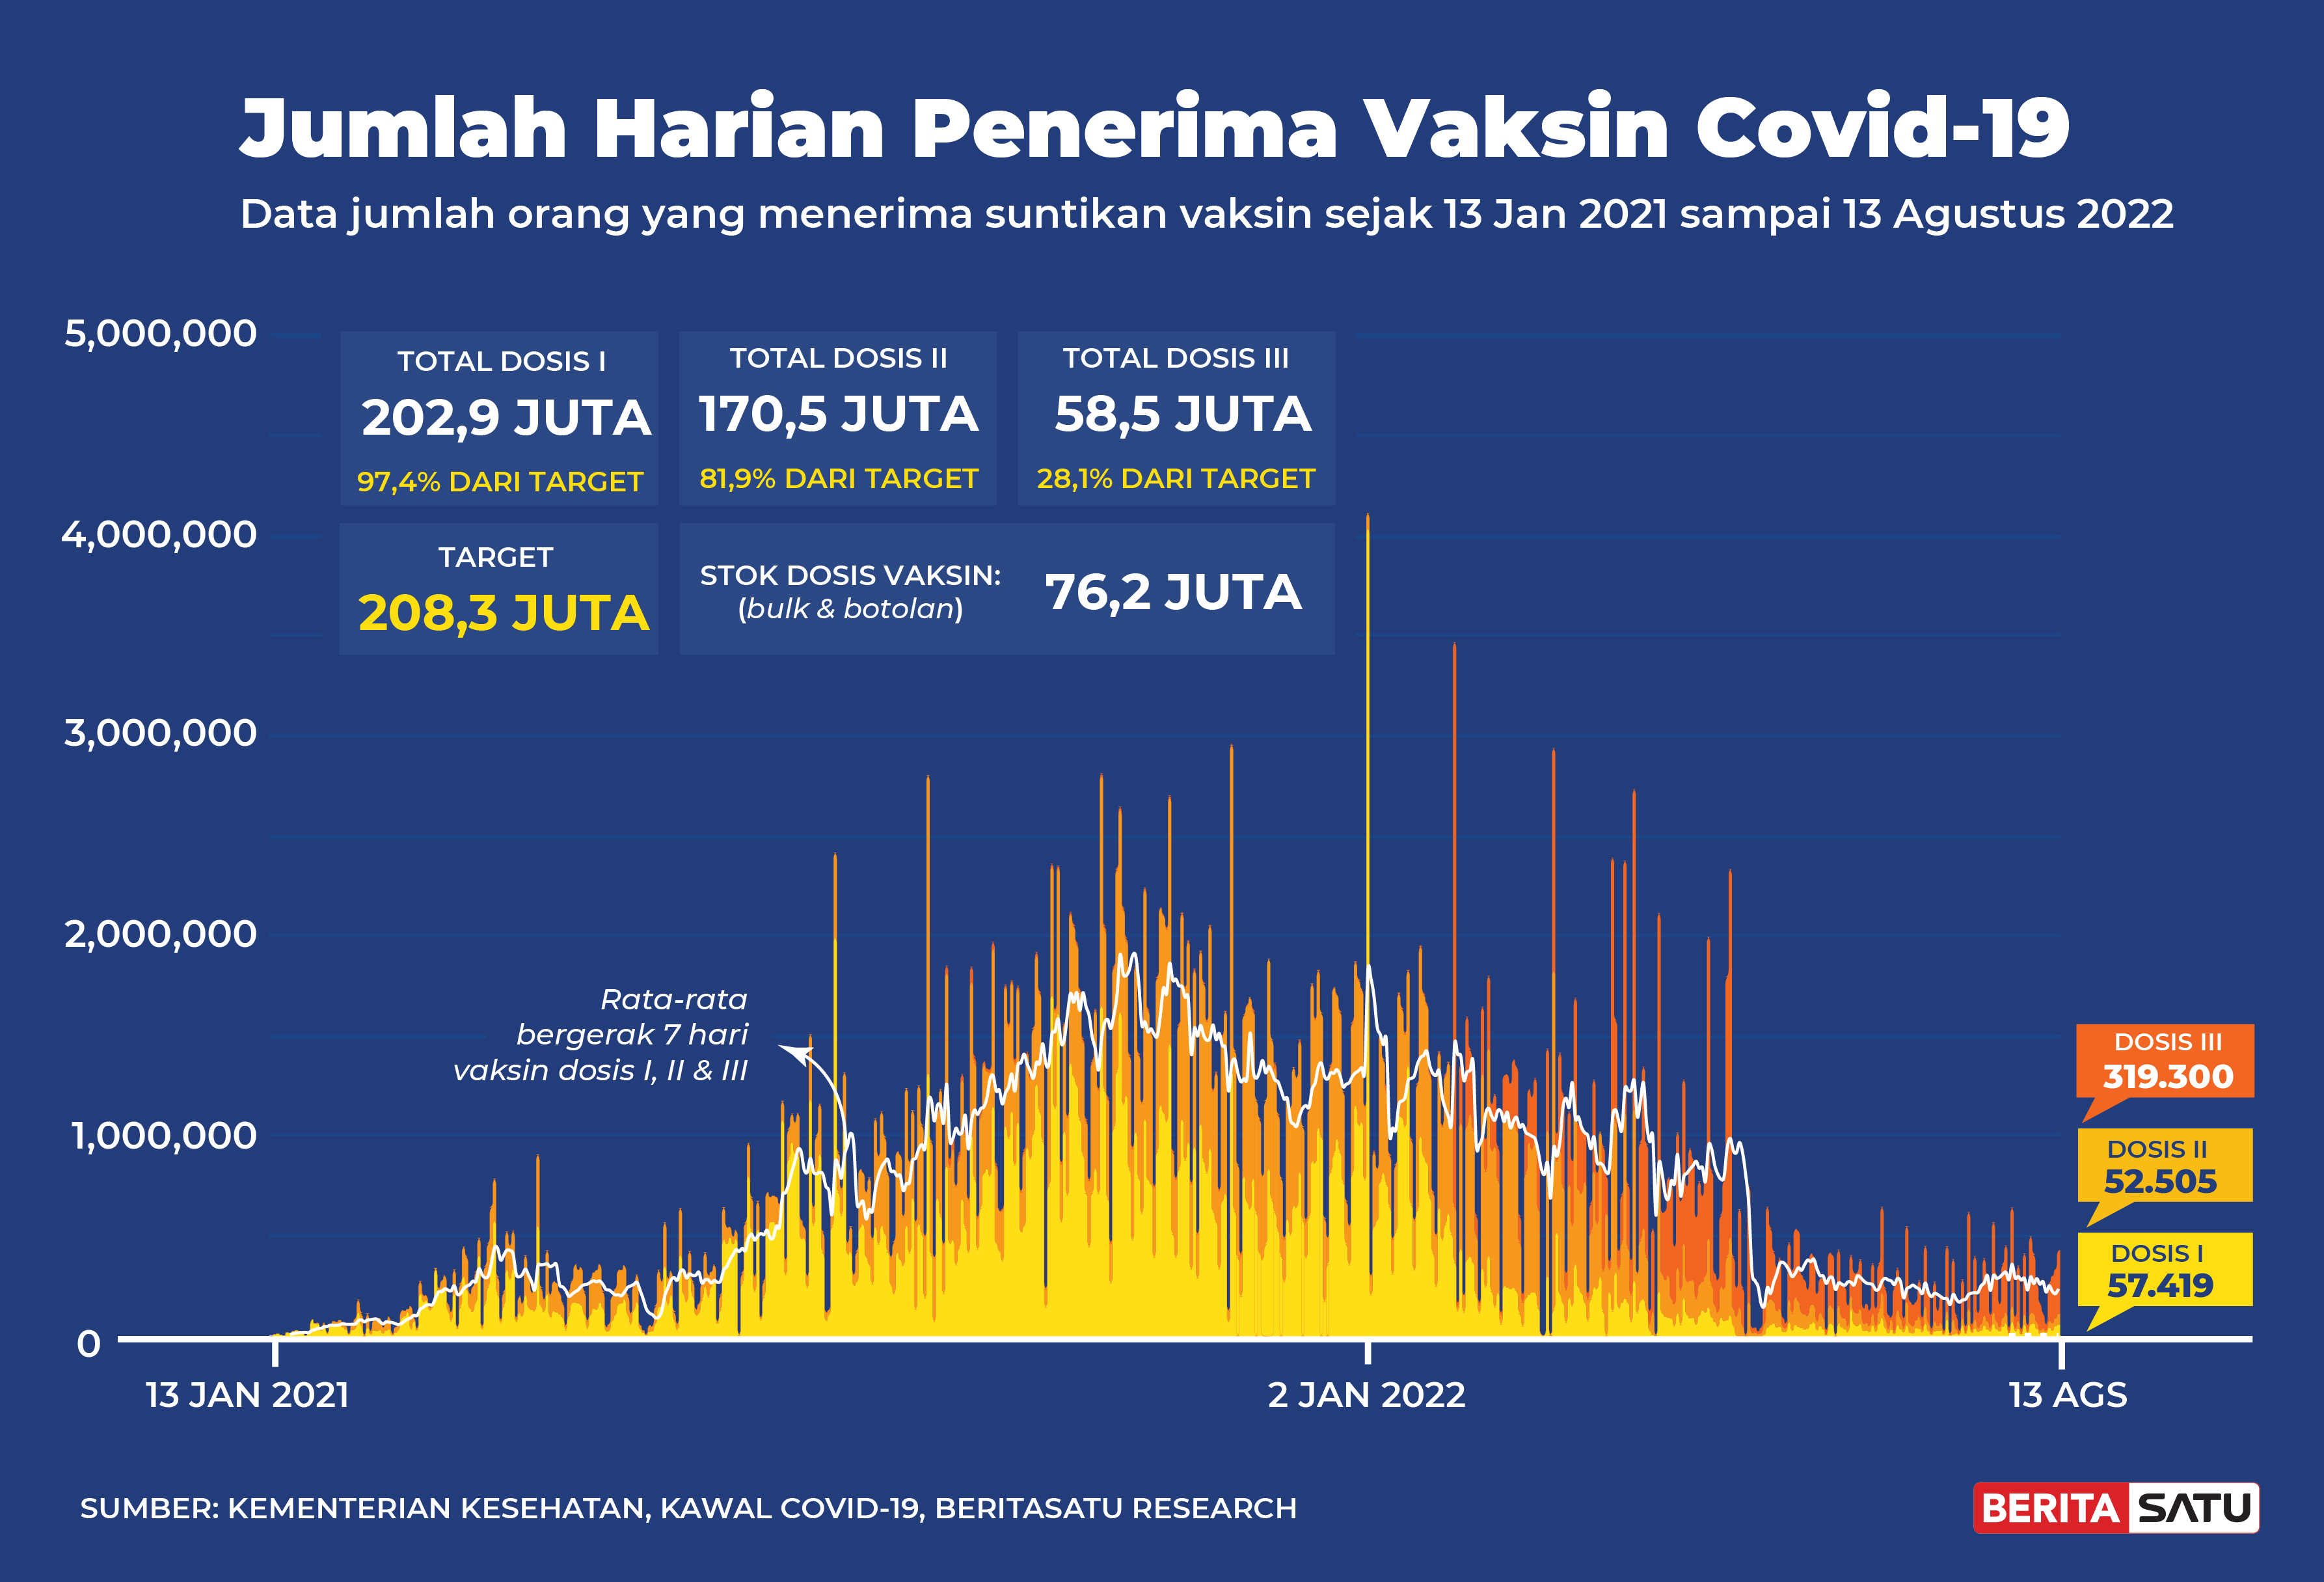 Penerima Vaksin Covid-19 di Indonesia sampai 13 Agustus 2022